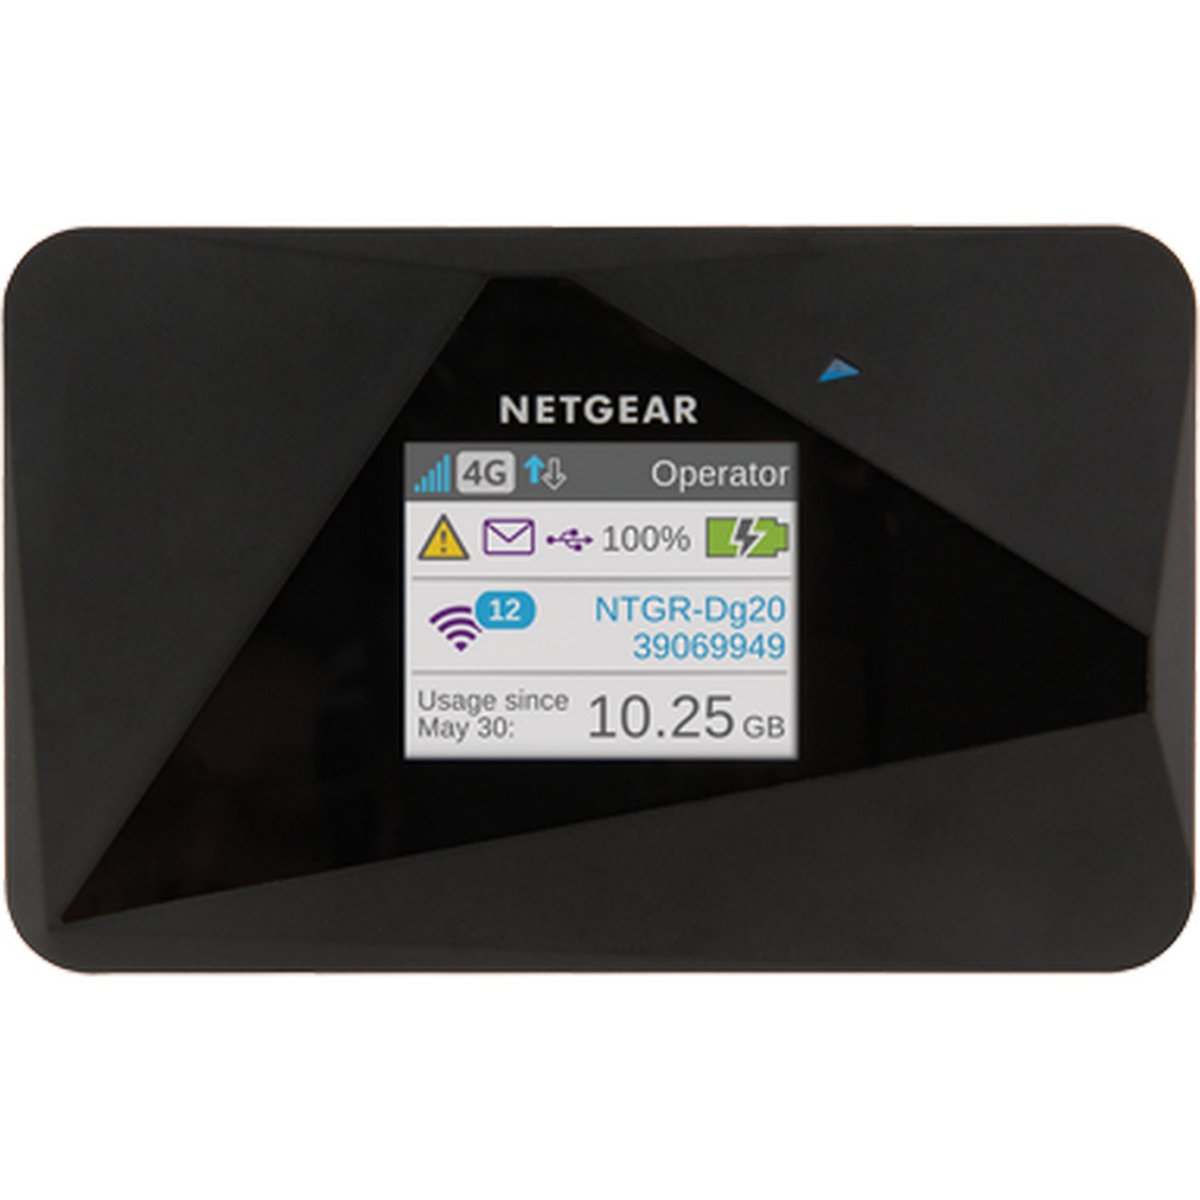 Netgear 3G/4G LTE Router